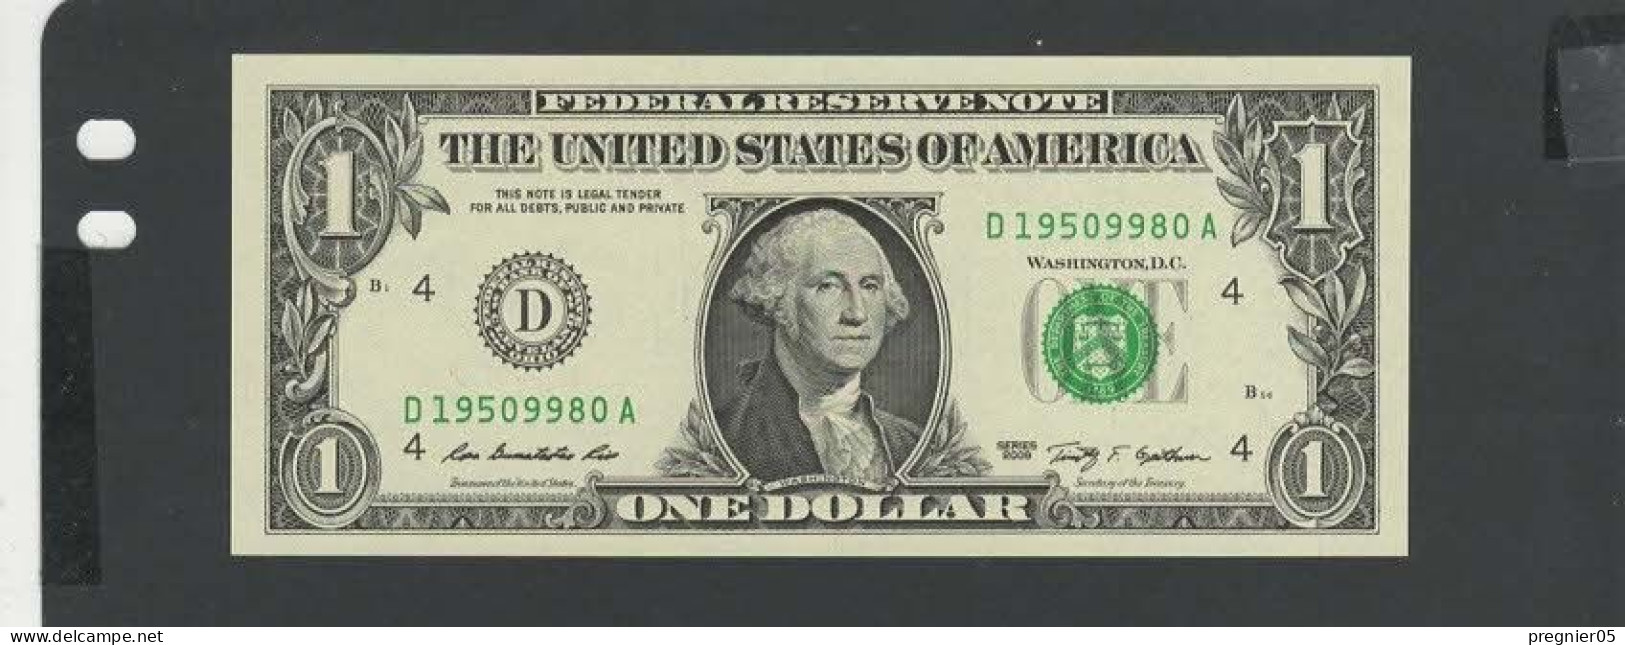 USA - Billet 1 Dollar 2009 NEUF/UNC P.529 § D - Billetes De La Reserva Federal (1928-...)